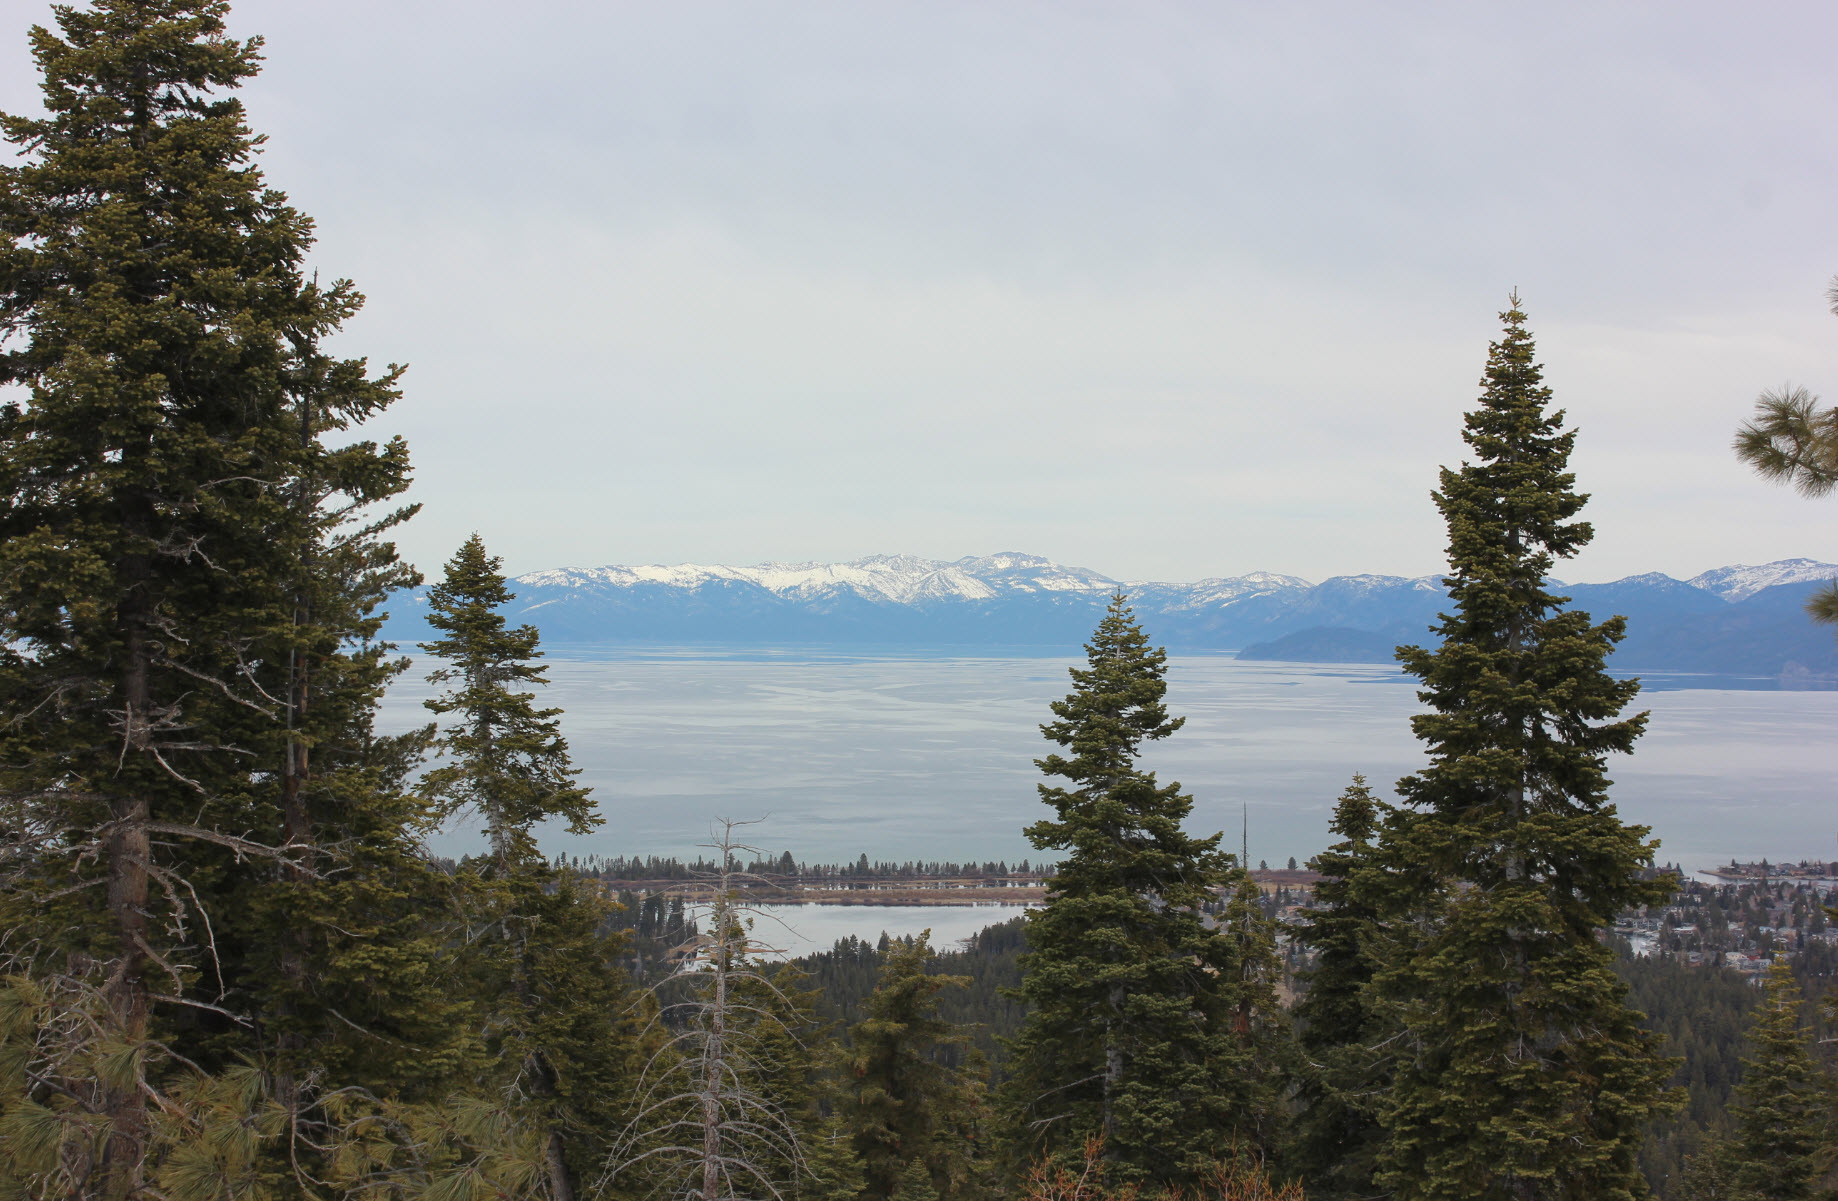 Lake Tahoe from the peak